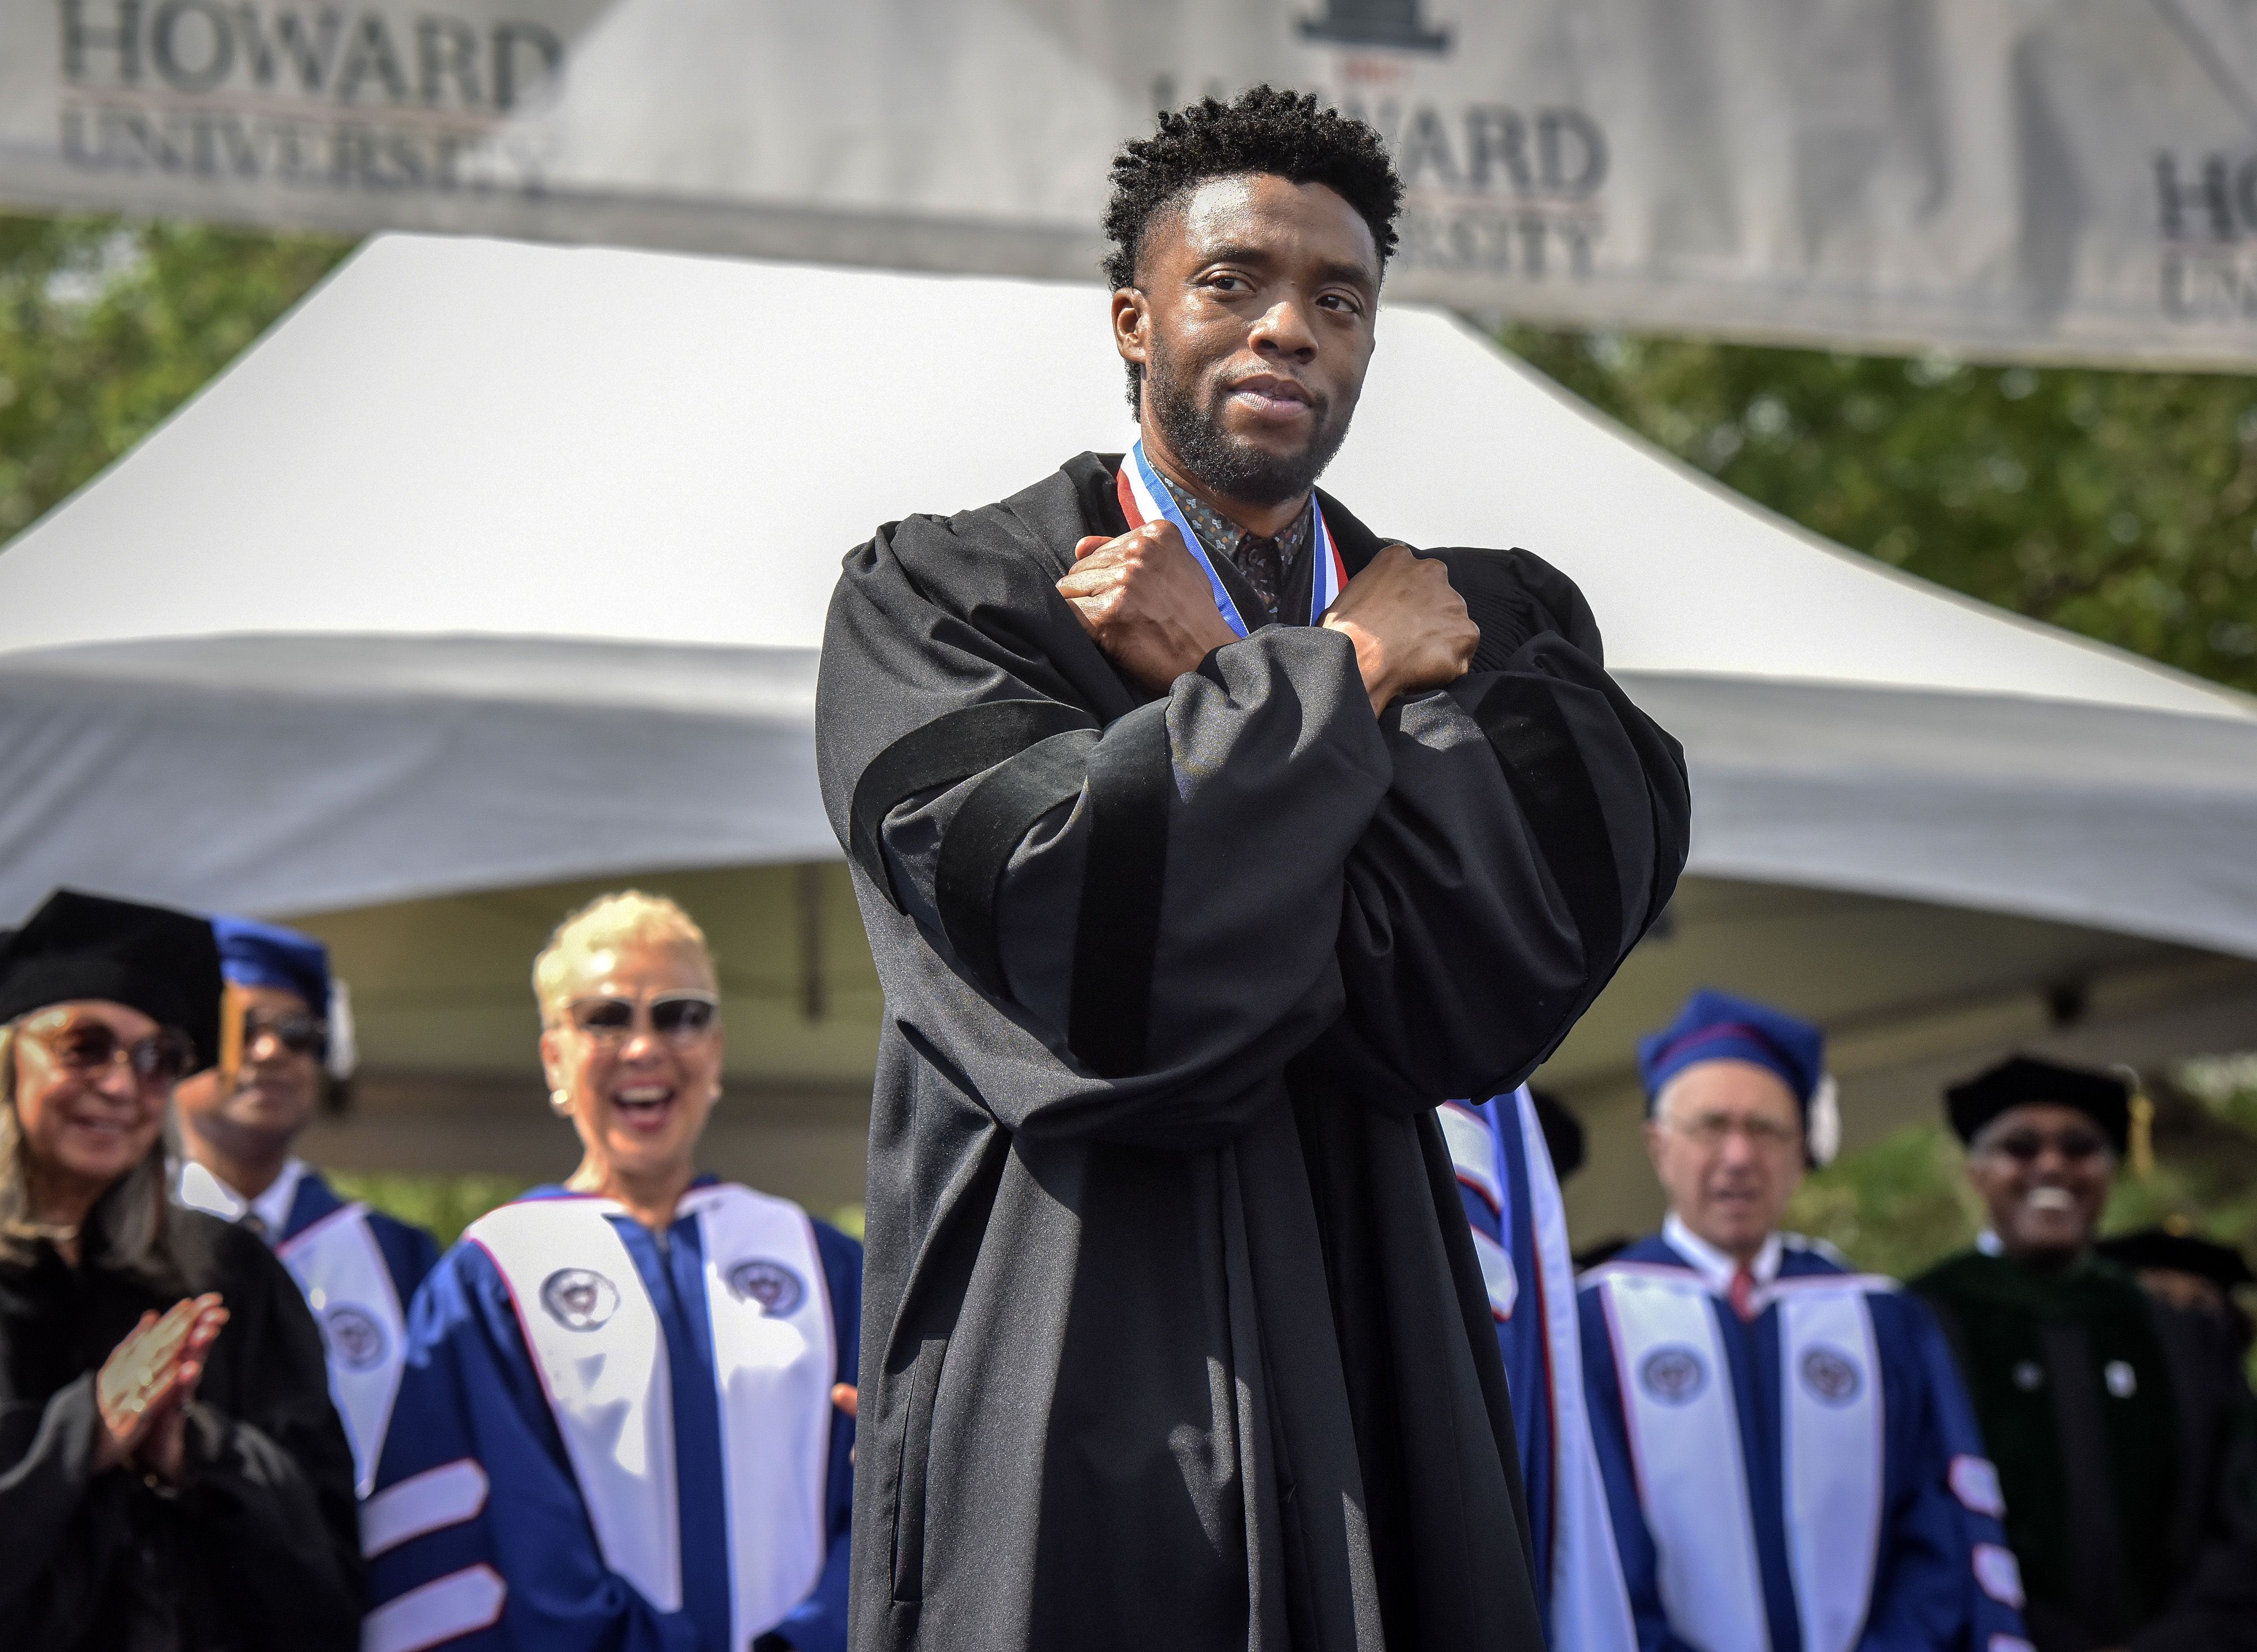 Howard University : Obama Urges Howard University Graduates To Get